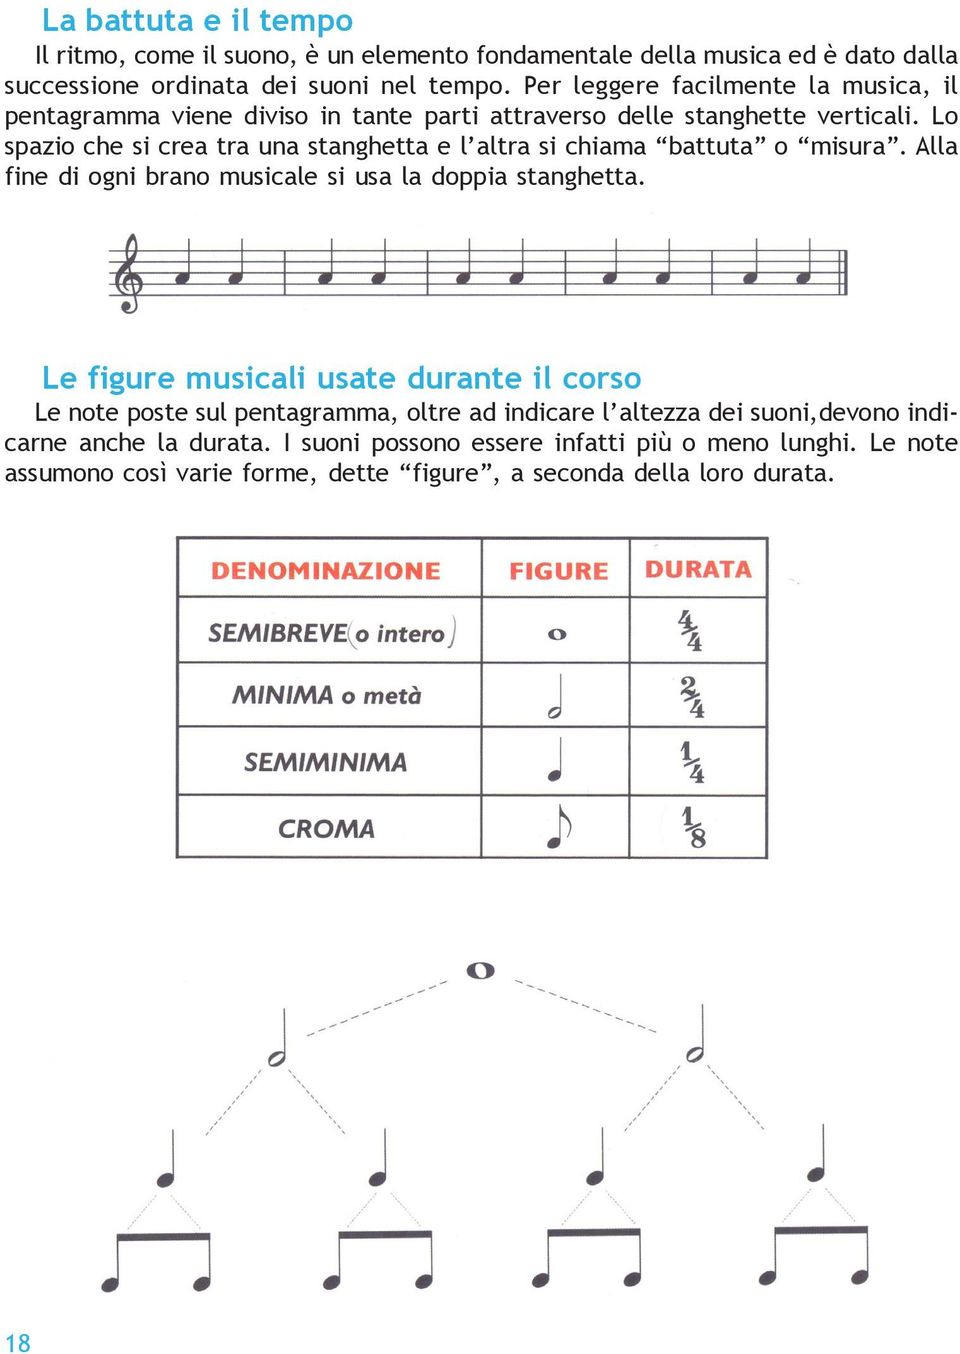 Lo spazio che si crea tra una stanghetta e l altra si chiama battuta o misura. Alla fine di ogni brano musicale si usa la doppia stanghetta.